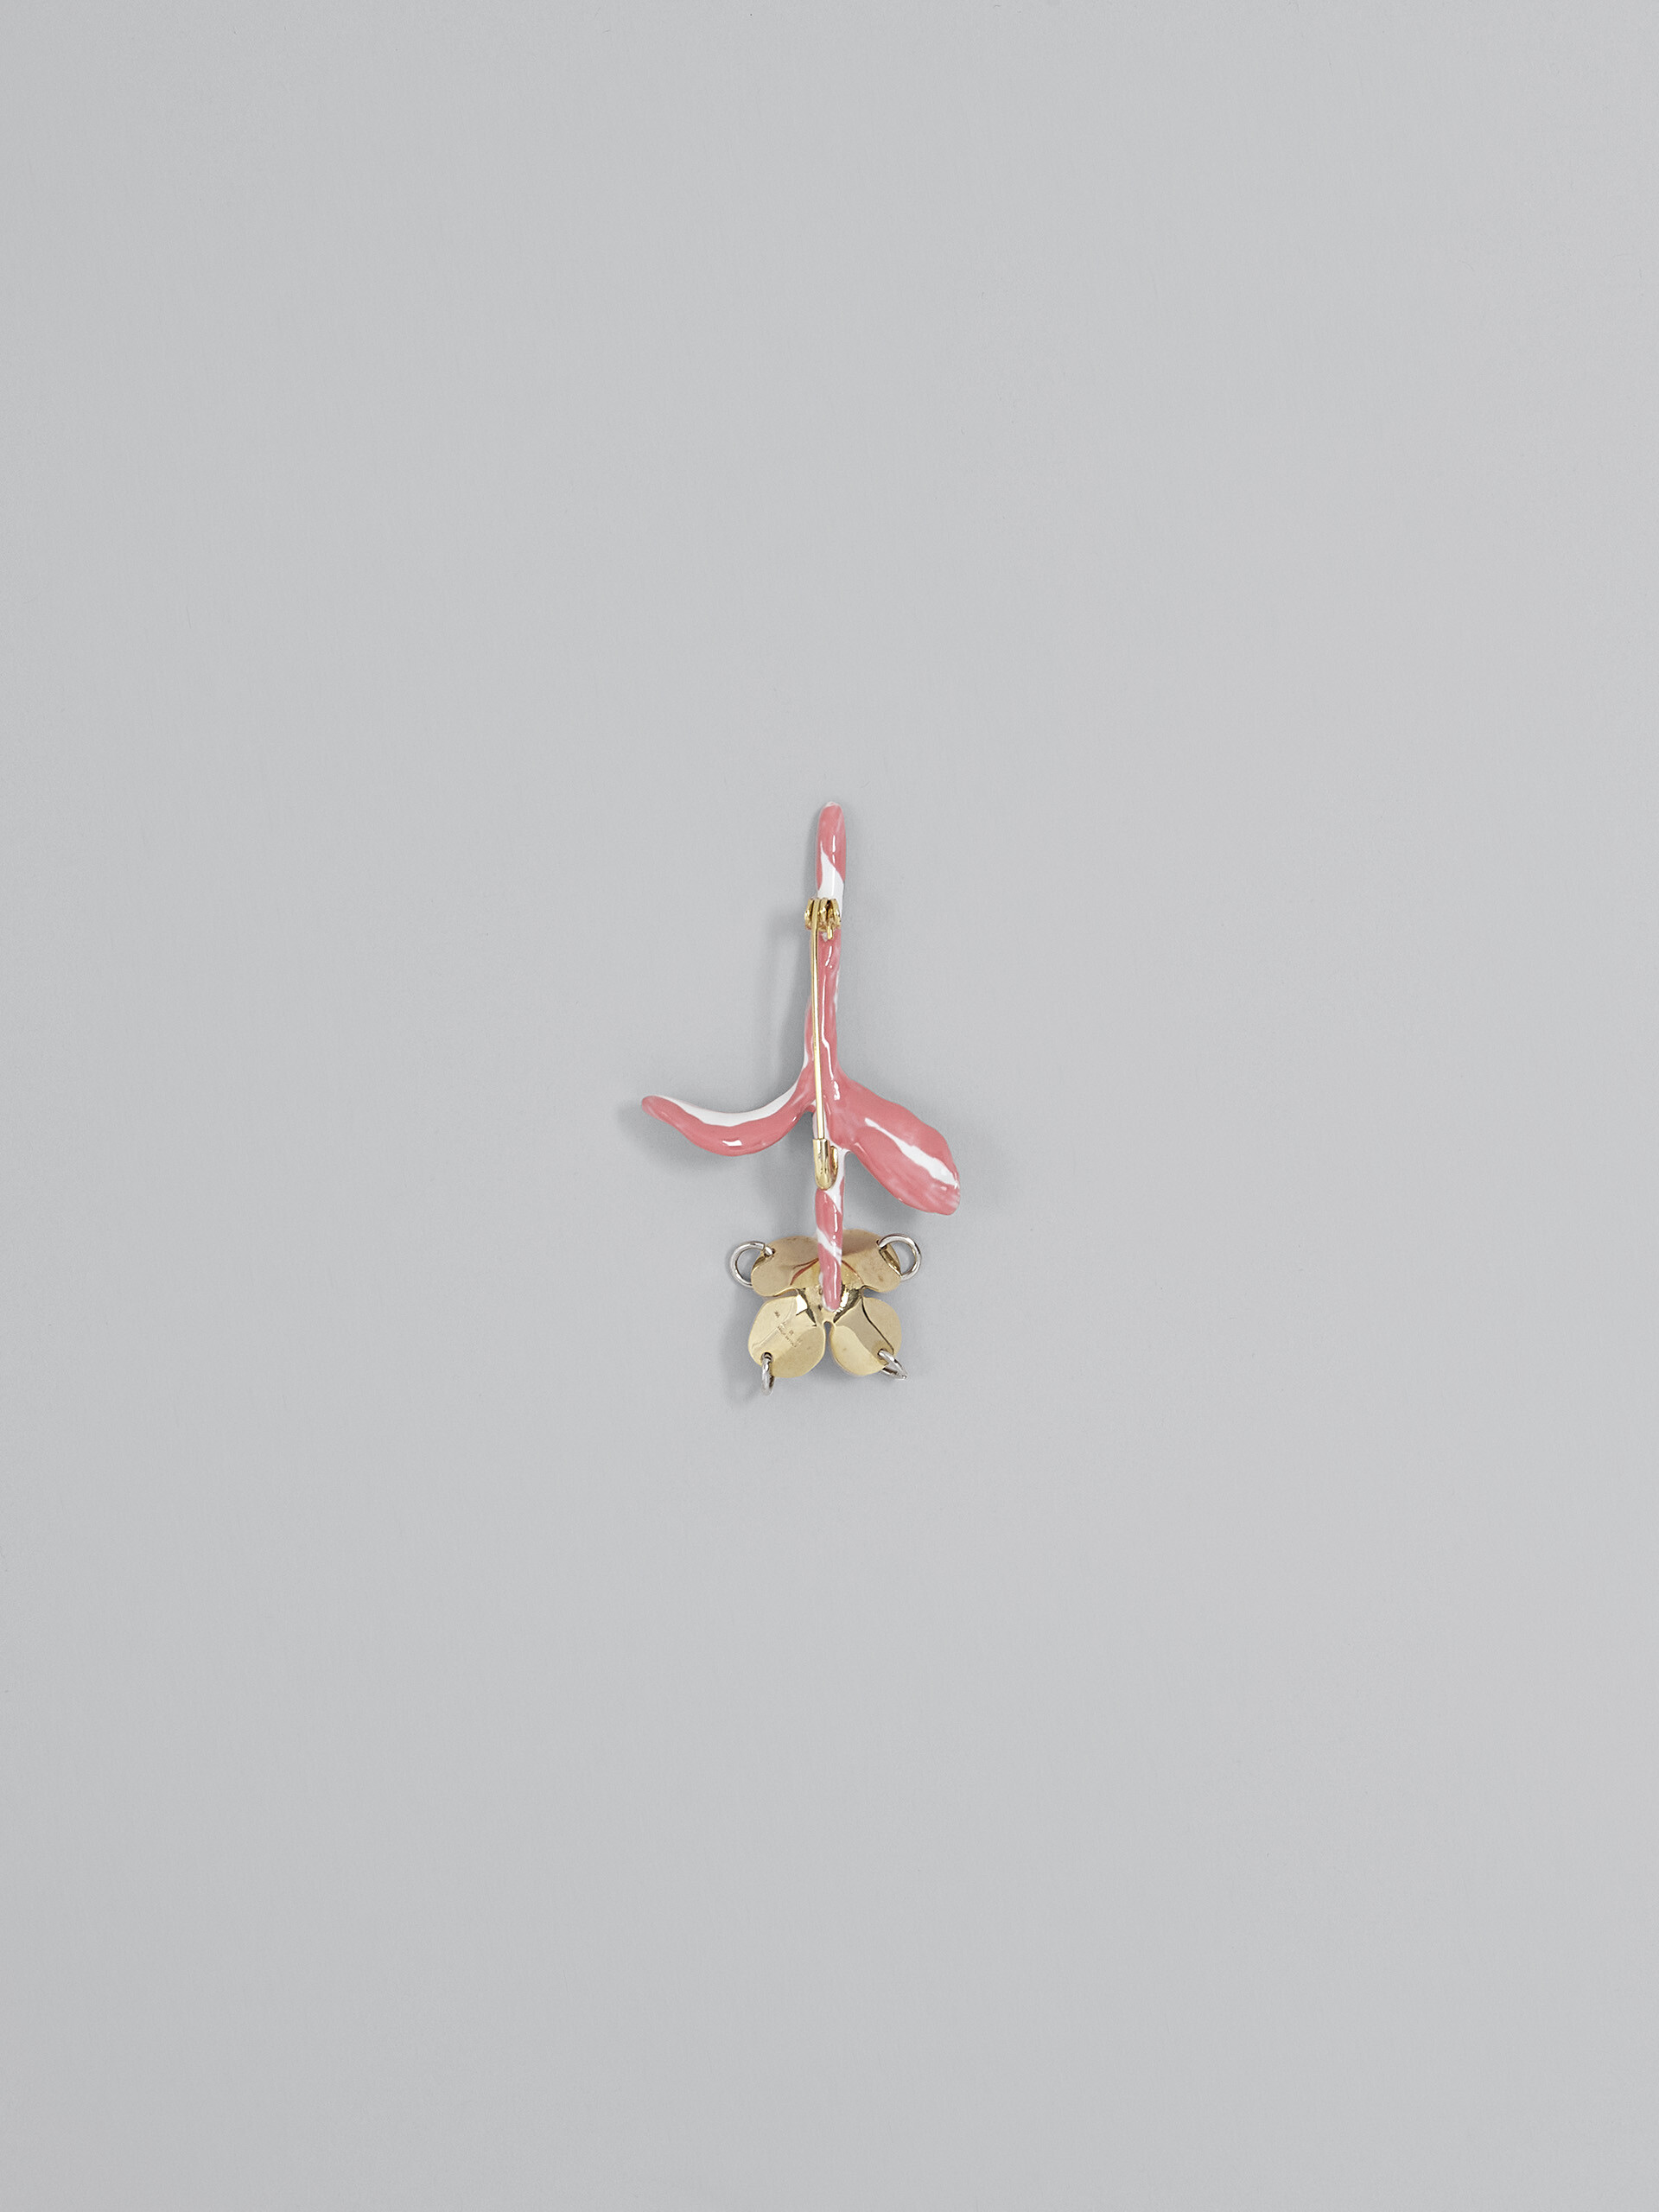 FLOWER pink brooch - Broach - Image 3